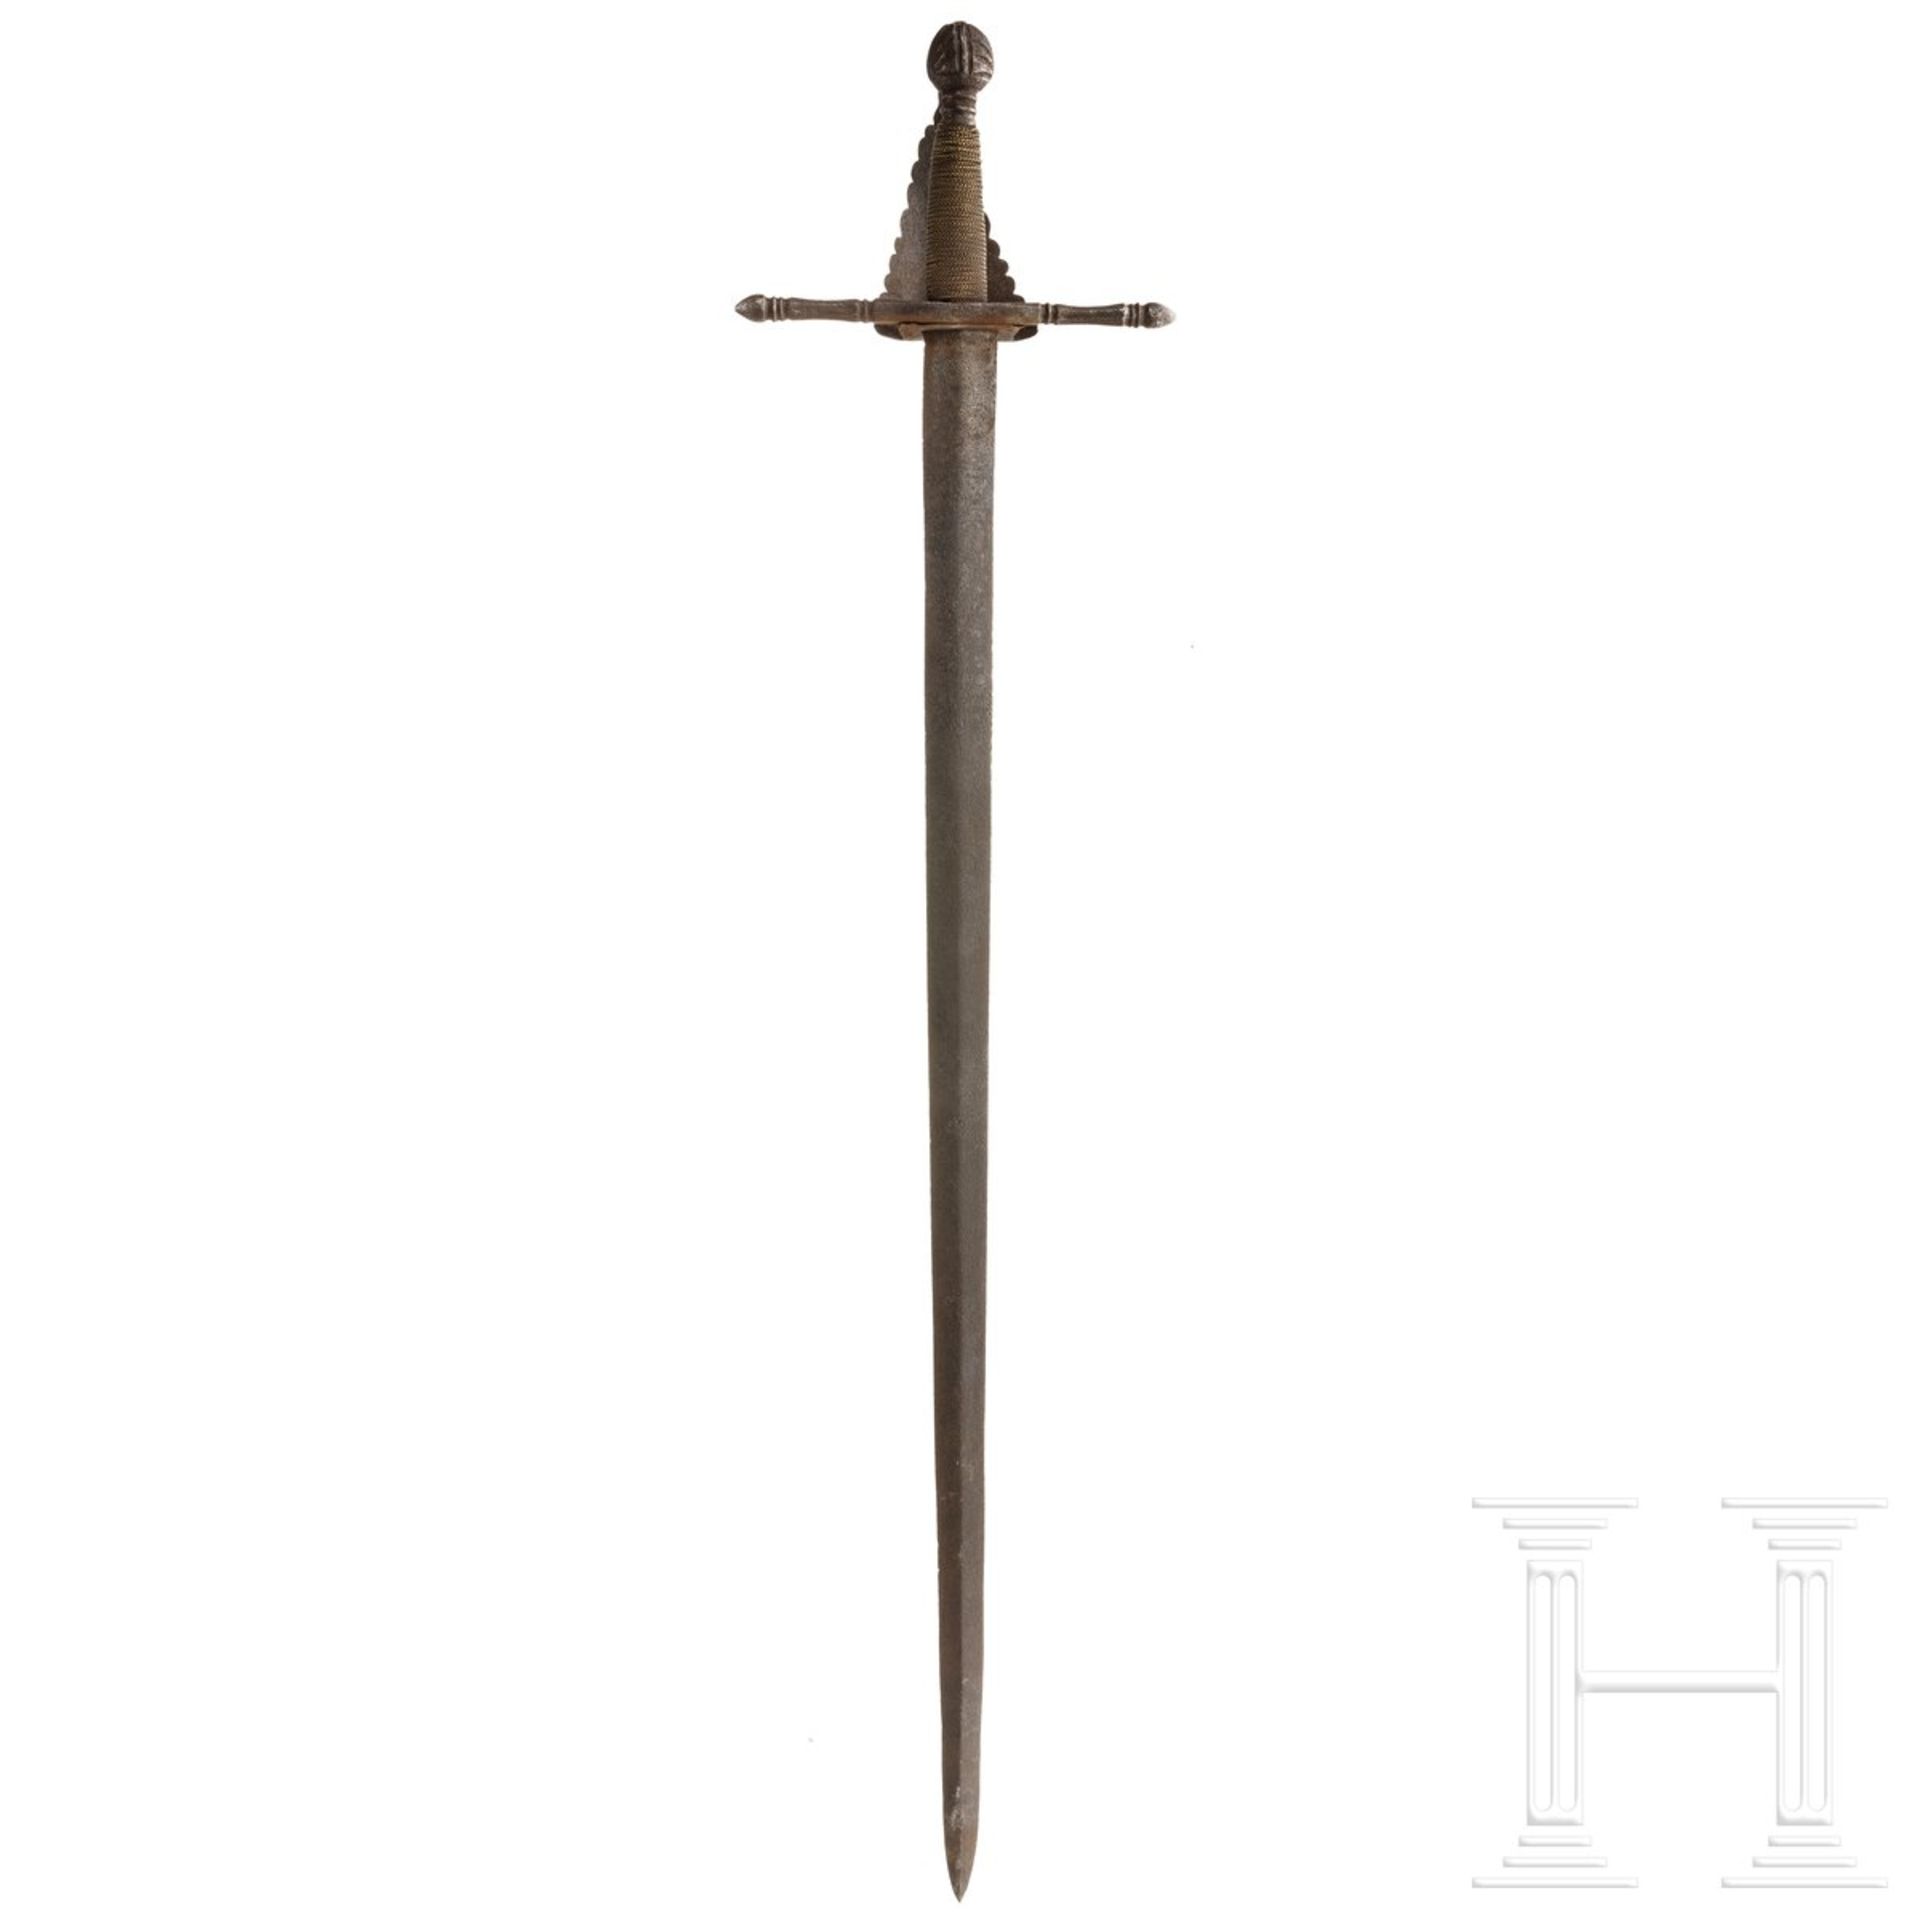 Schwert, Sammleranfertigung im Stil des 16. Jhdts. - Image 2 of 4